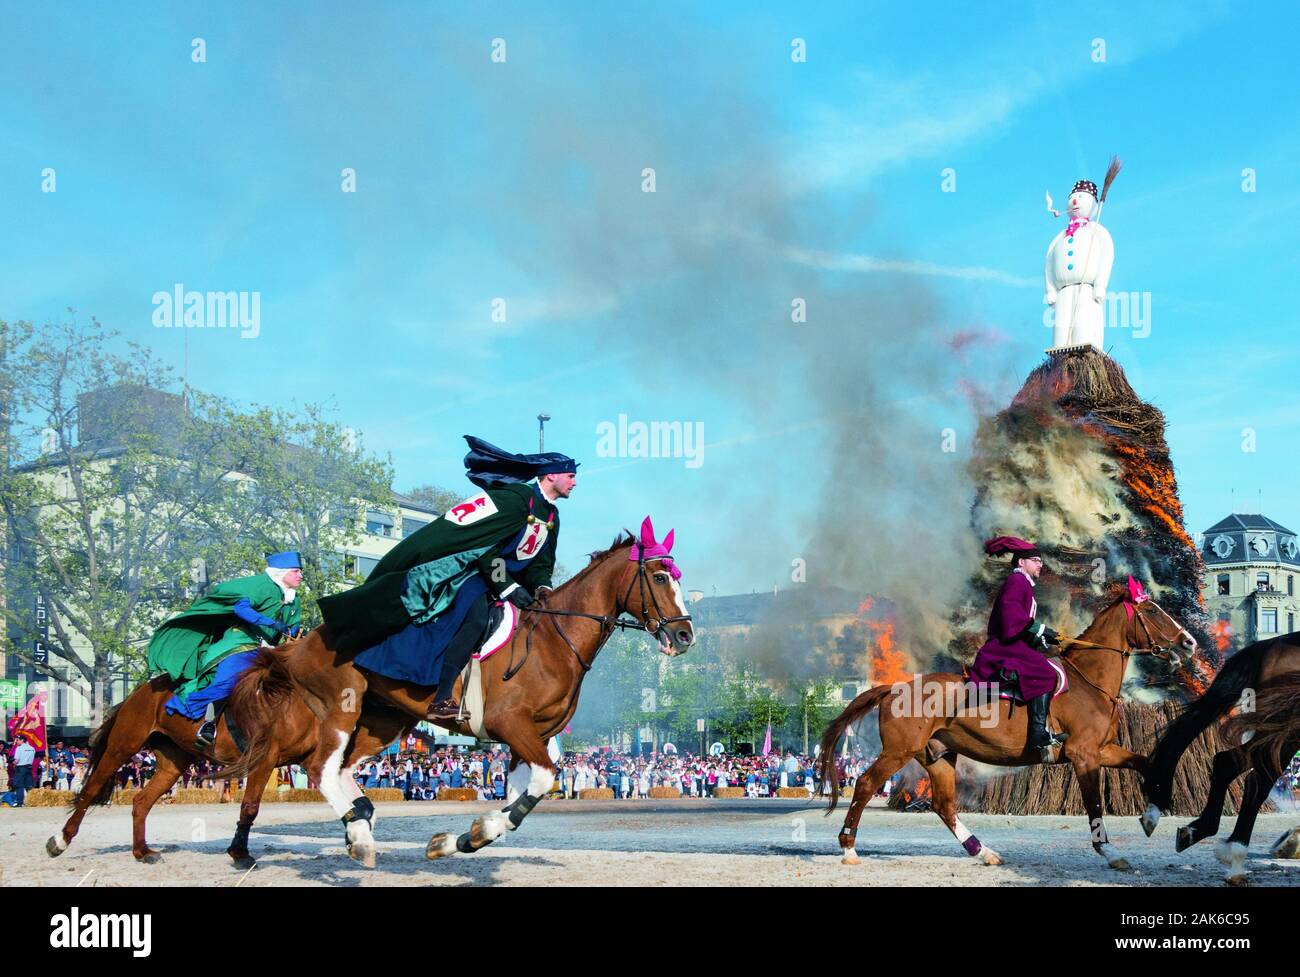 Kanton Zürich: fruehlingsfest Sechselaeuten, Verbrennung des Boeoeggs mit dem Sechselaeuten Platz, Schweiz | Verwendung weltweit Stockfoto